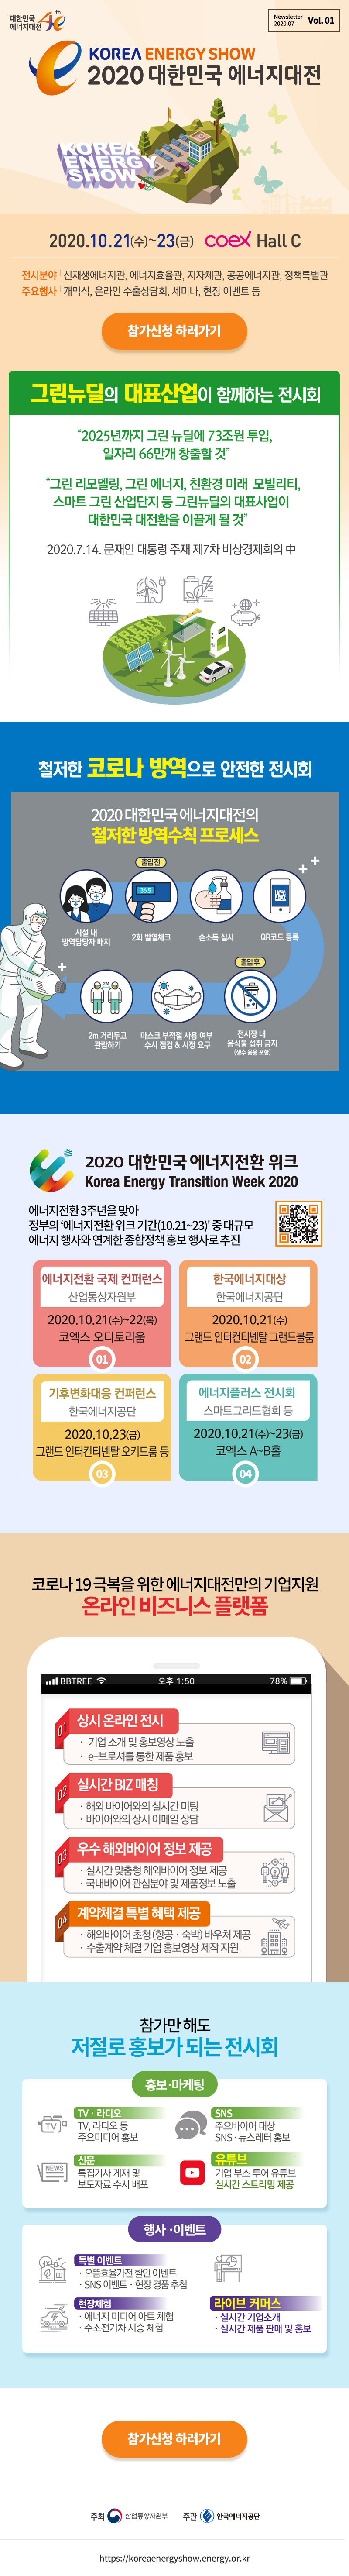 [2020_뉴스레터_Vol.01] 2020 대한민국 에너지대전